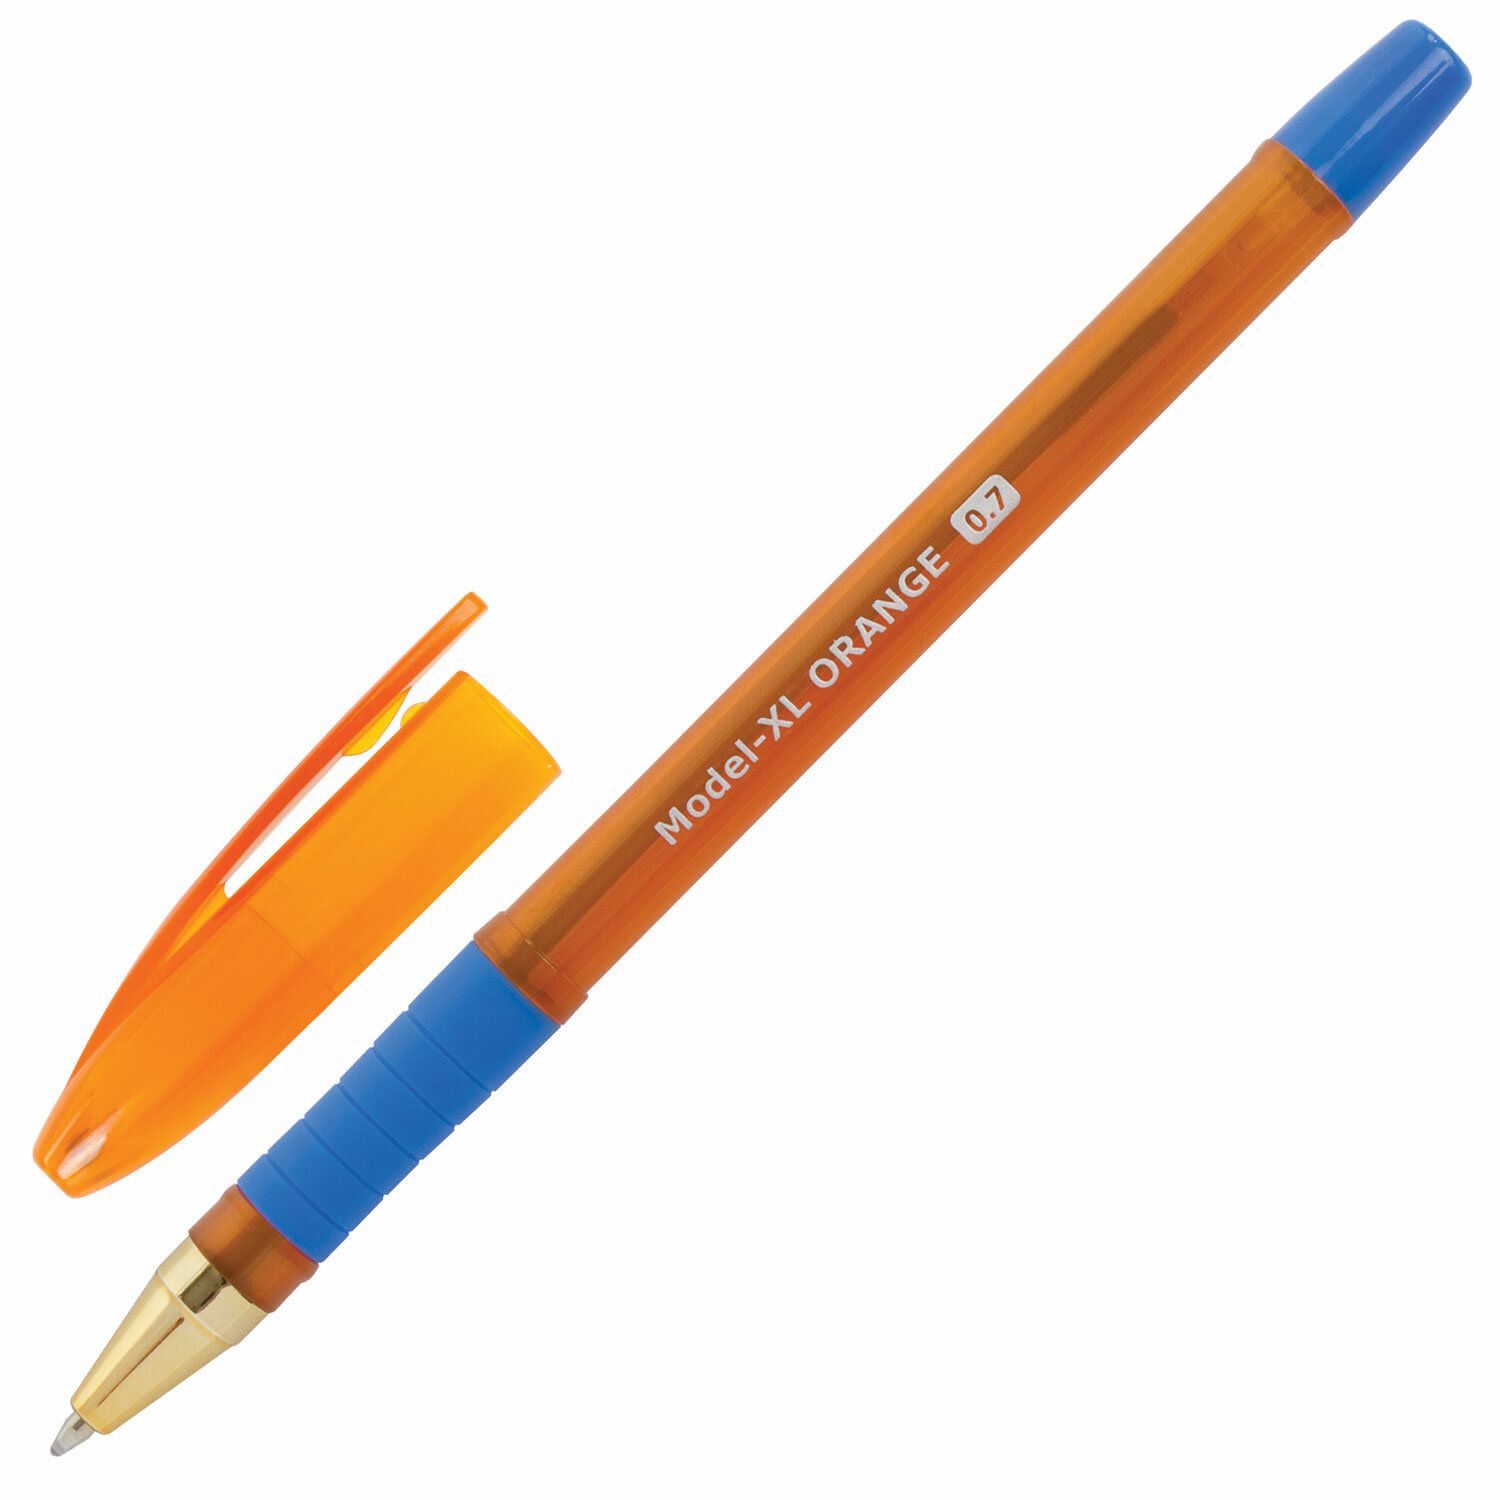 Brauberg 0.7. Ручка шариковая масляная с грипом BRAUBERG model-XL Orange, синяя. Ручка БРАУБЕРГ масляная. Ручка БРАУБЕРГ 0.7 мм. Model-XL Orange 0.7 ручка.